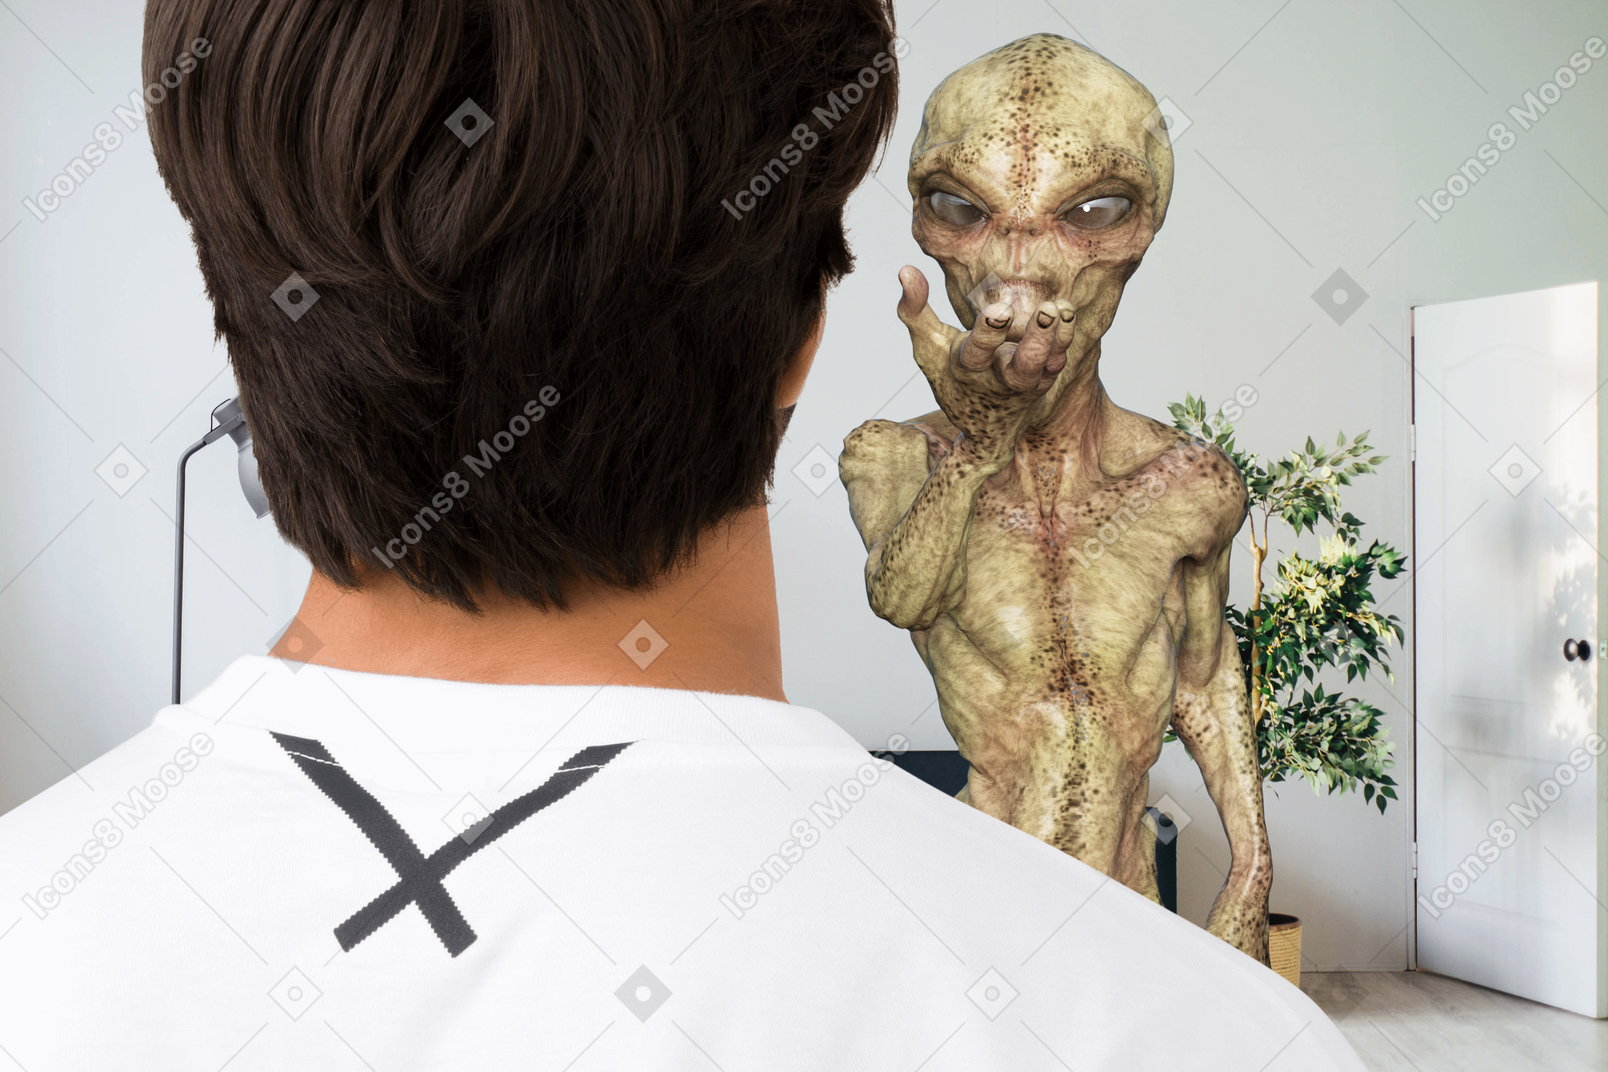 Man meeting an alien